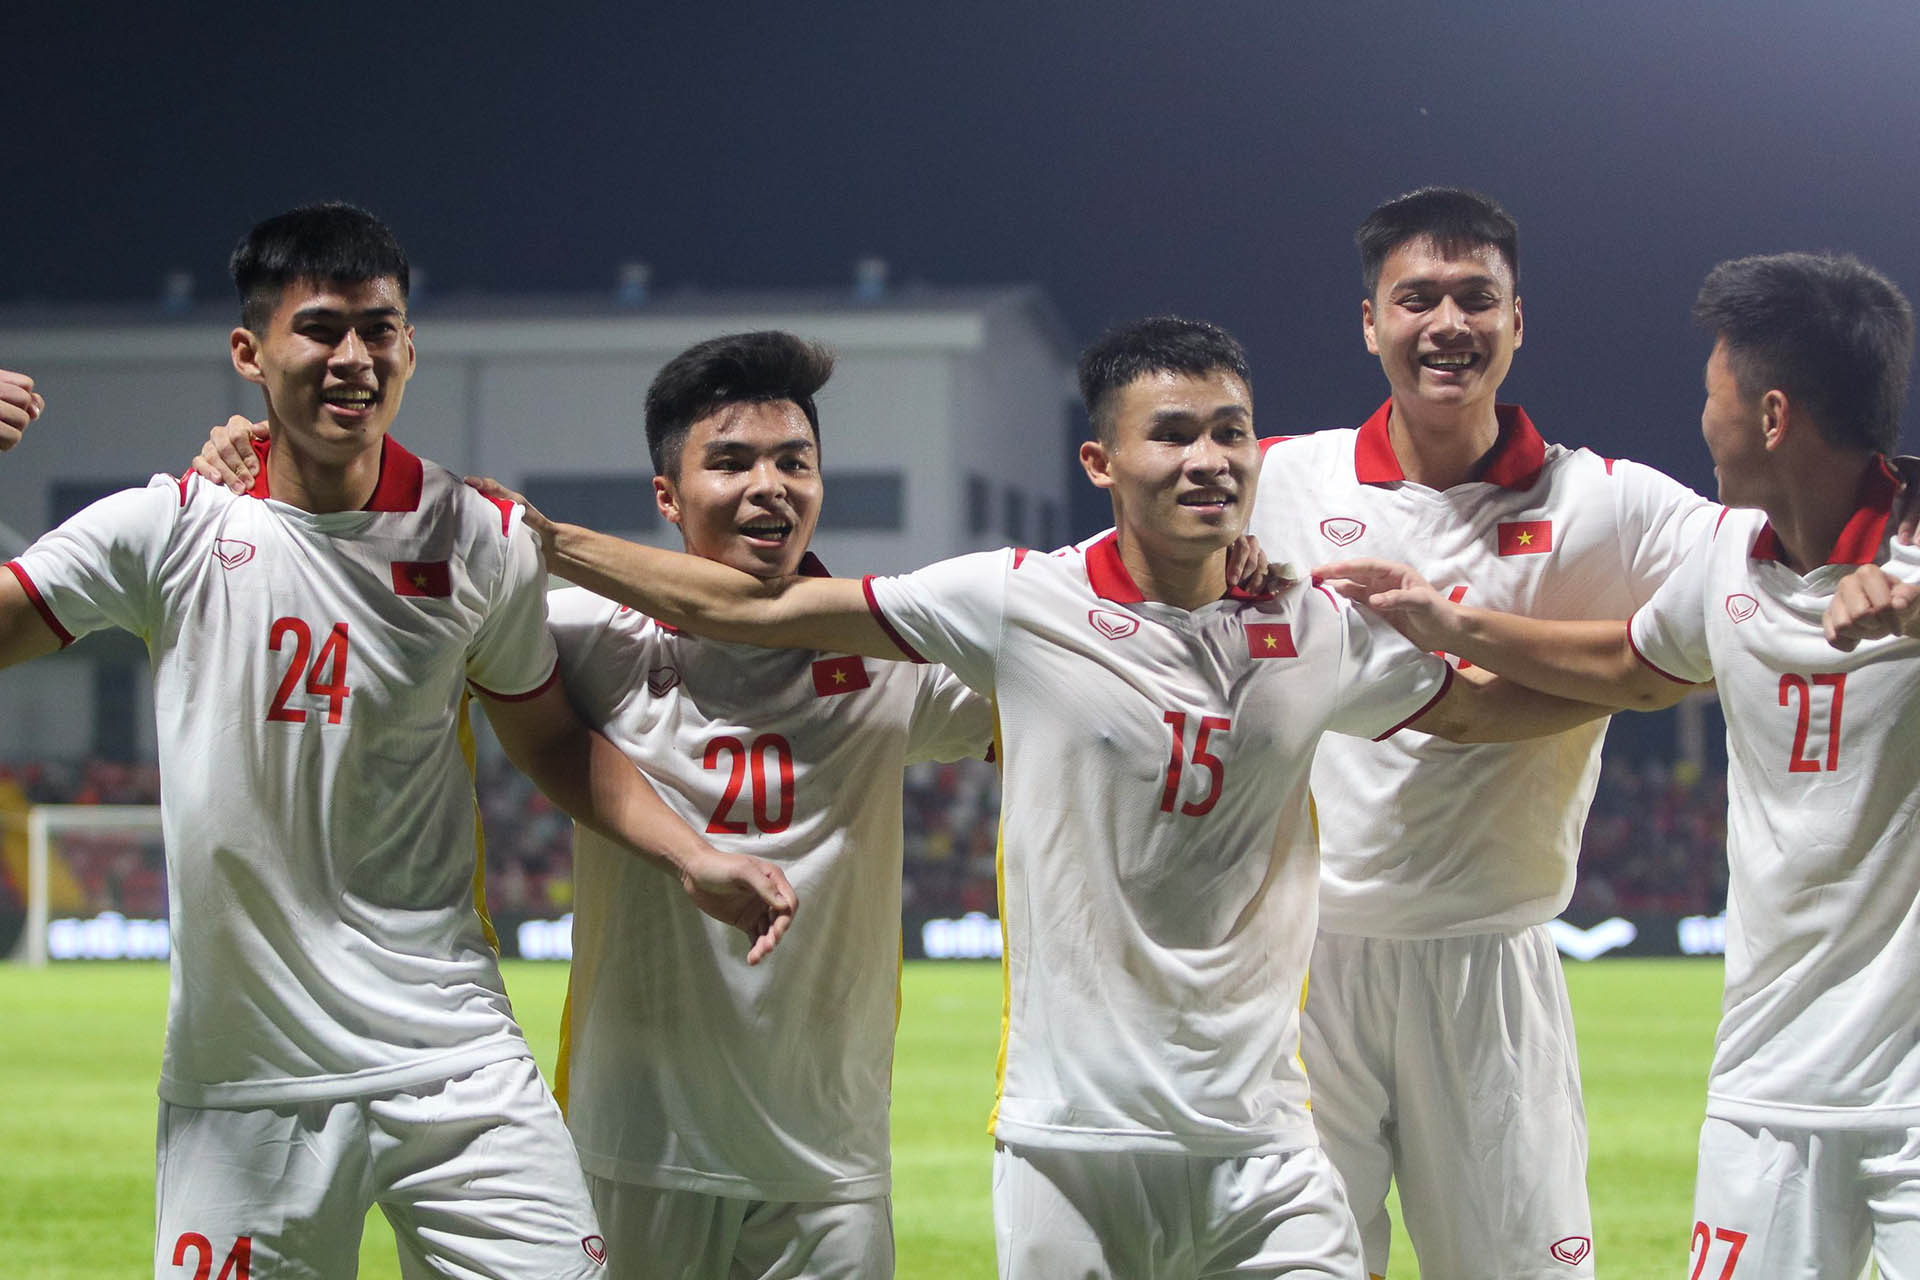 U23 Việt Nam, với những màn trình diễn đầy ấn tượng, đã chinh phục được không chỉ khán giả Việt Nam mà còn cả fan hâm mộ bóng đá trên khắp thế giới. Hãy xem hình đội tuyển U23 Việt Nam và cảm nhận màn trình diễn đẳng cấp của những chàng trai trẻ này.